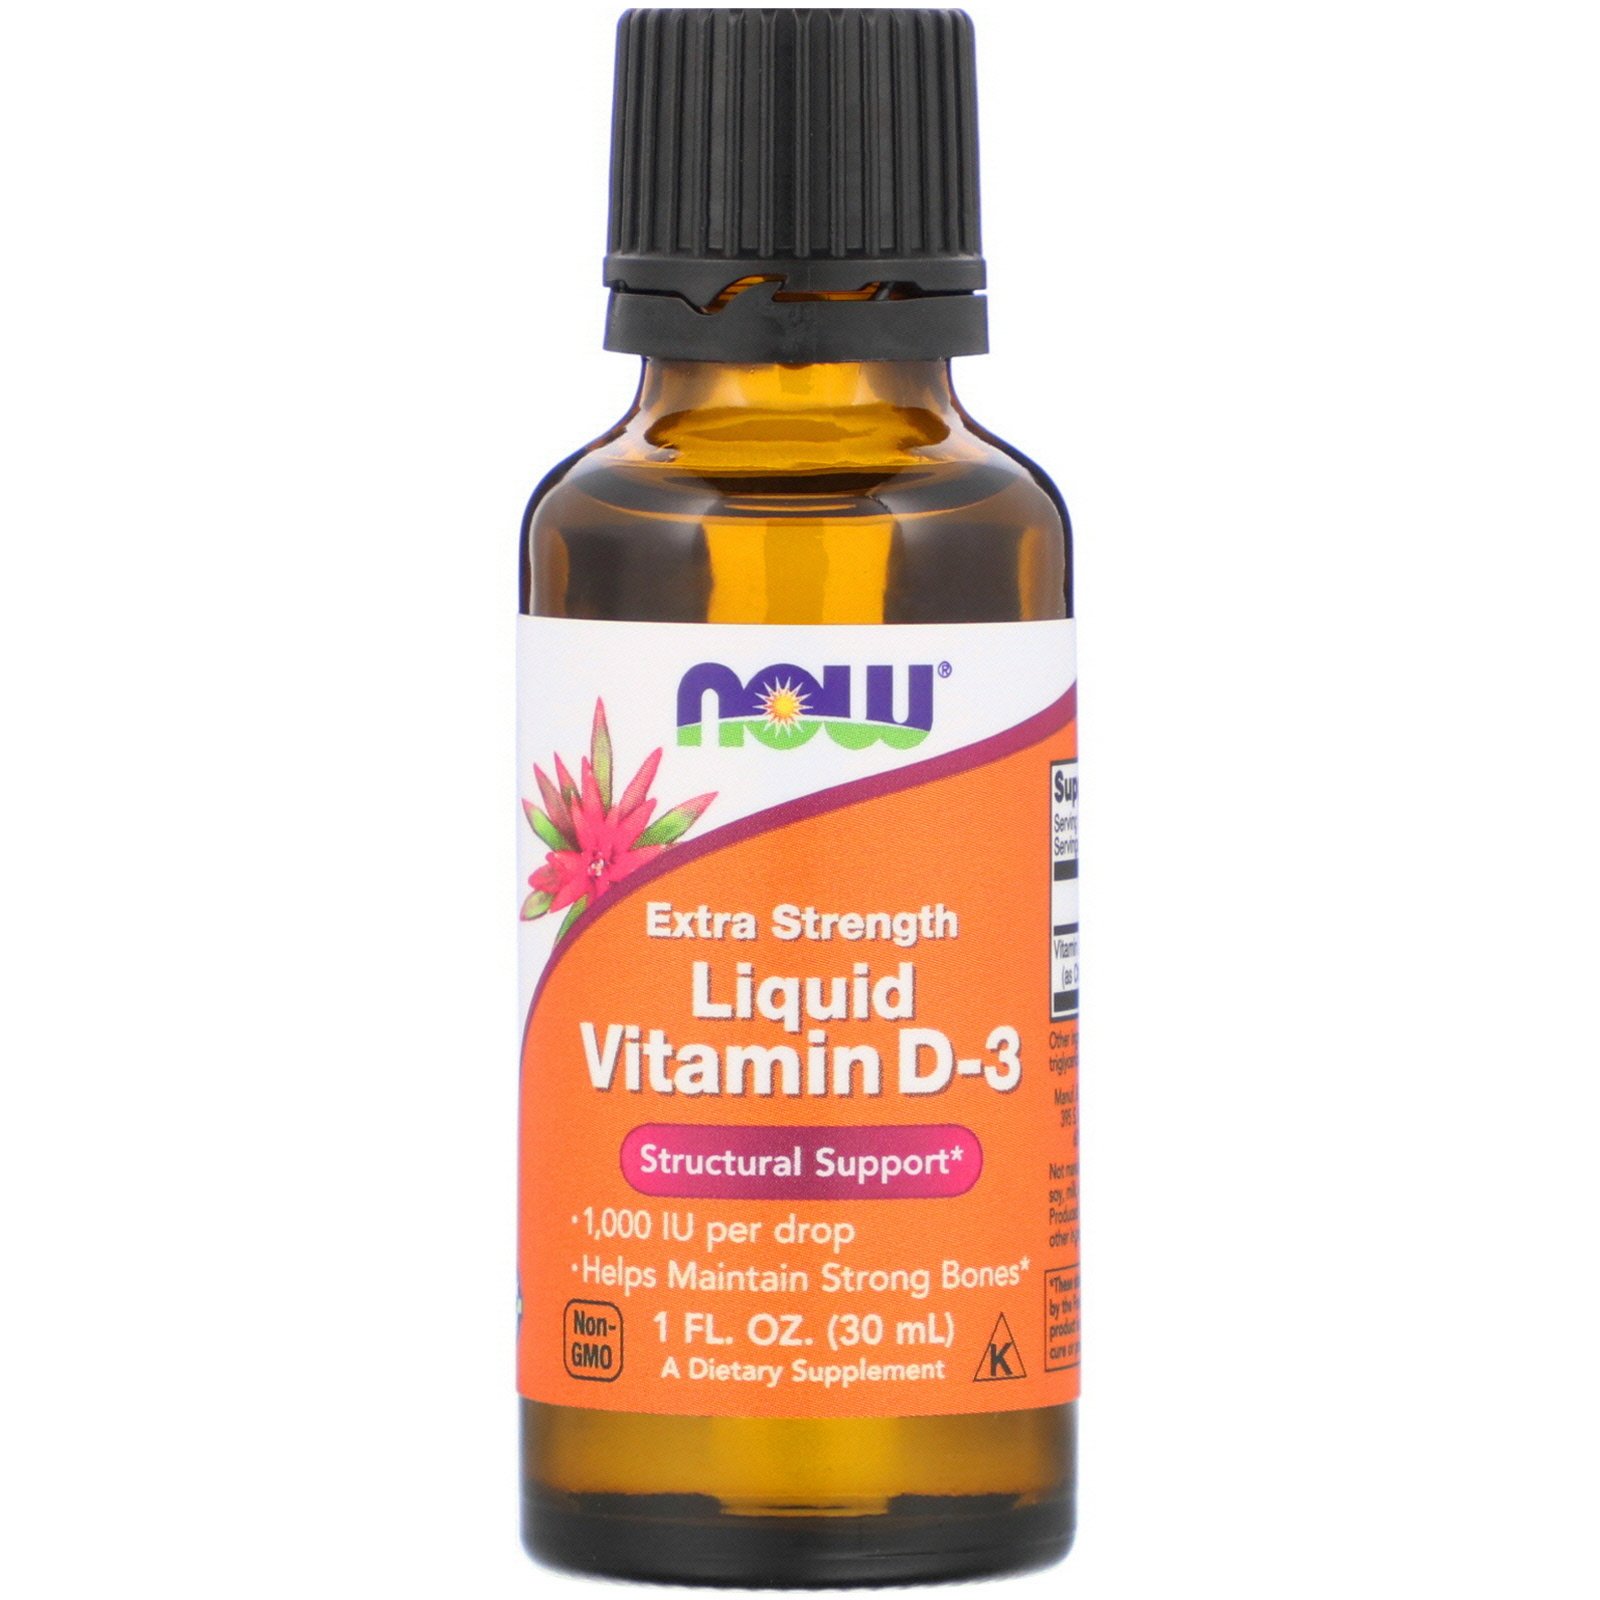 download vitamin d liquid drops